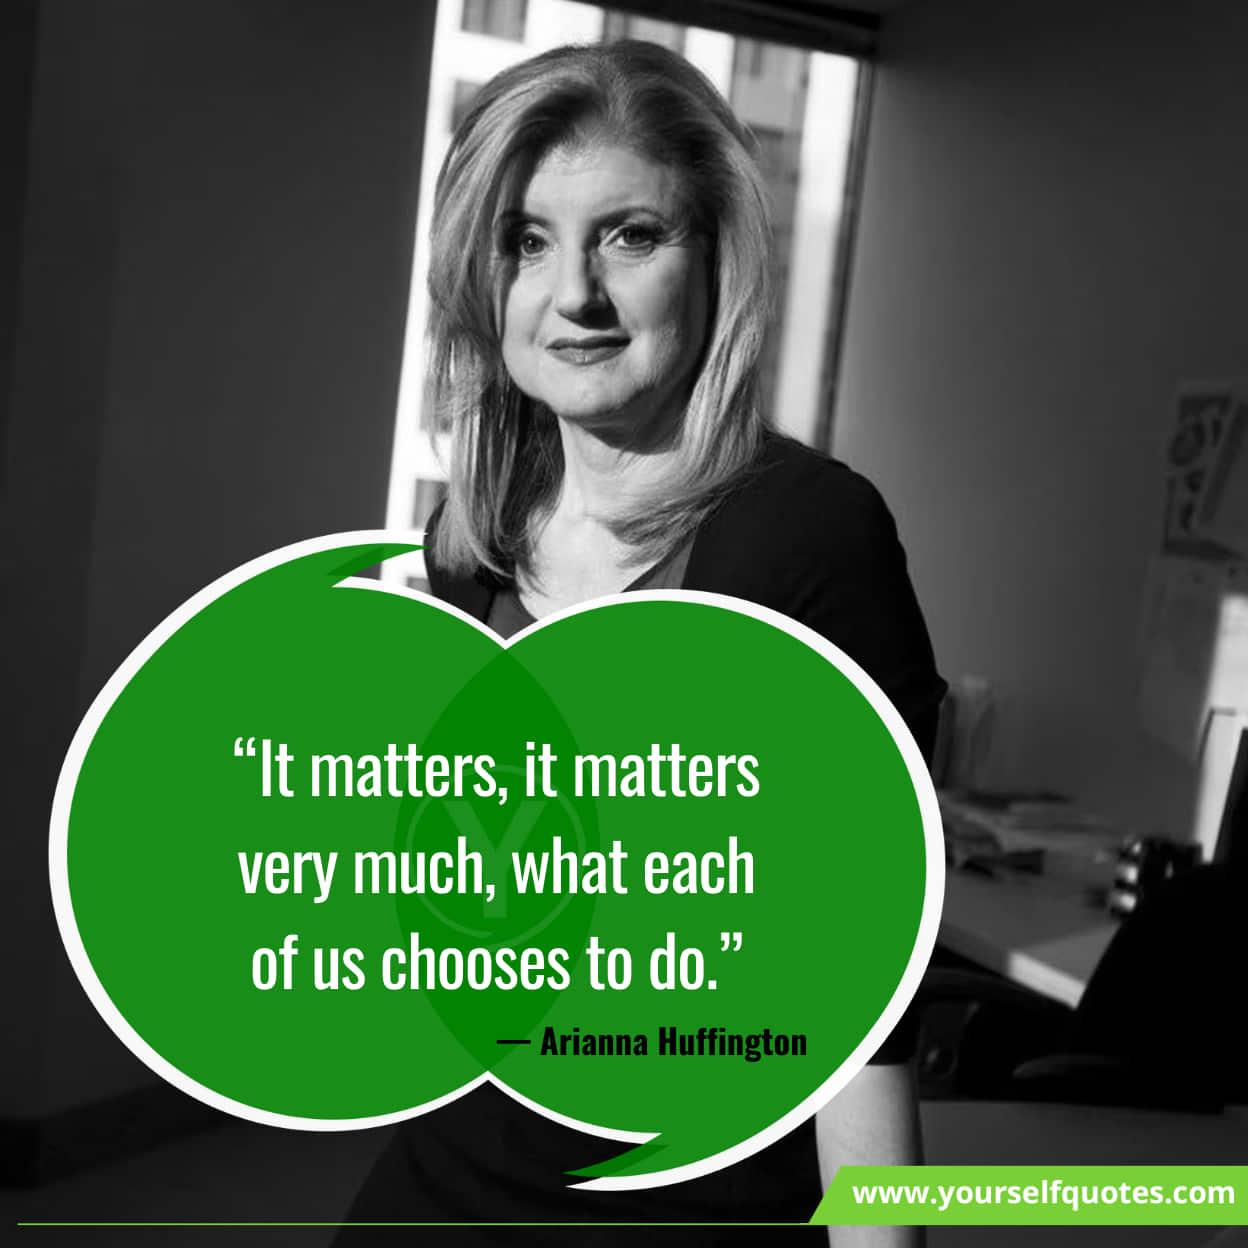 Arianna Huffington quotes on entrepreneurshi